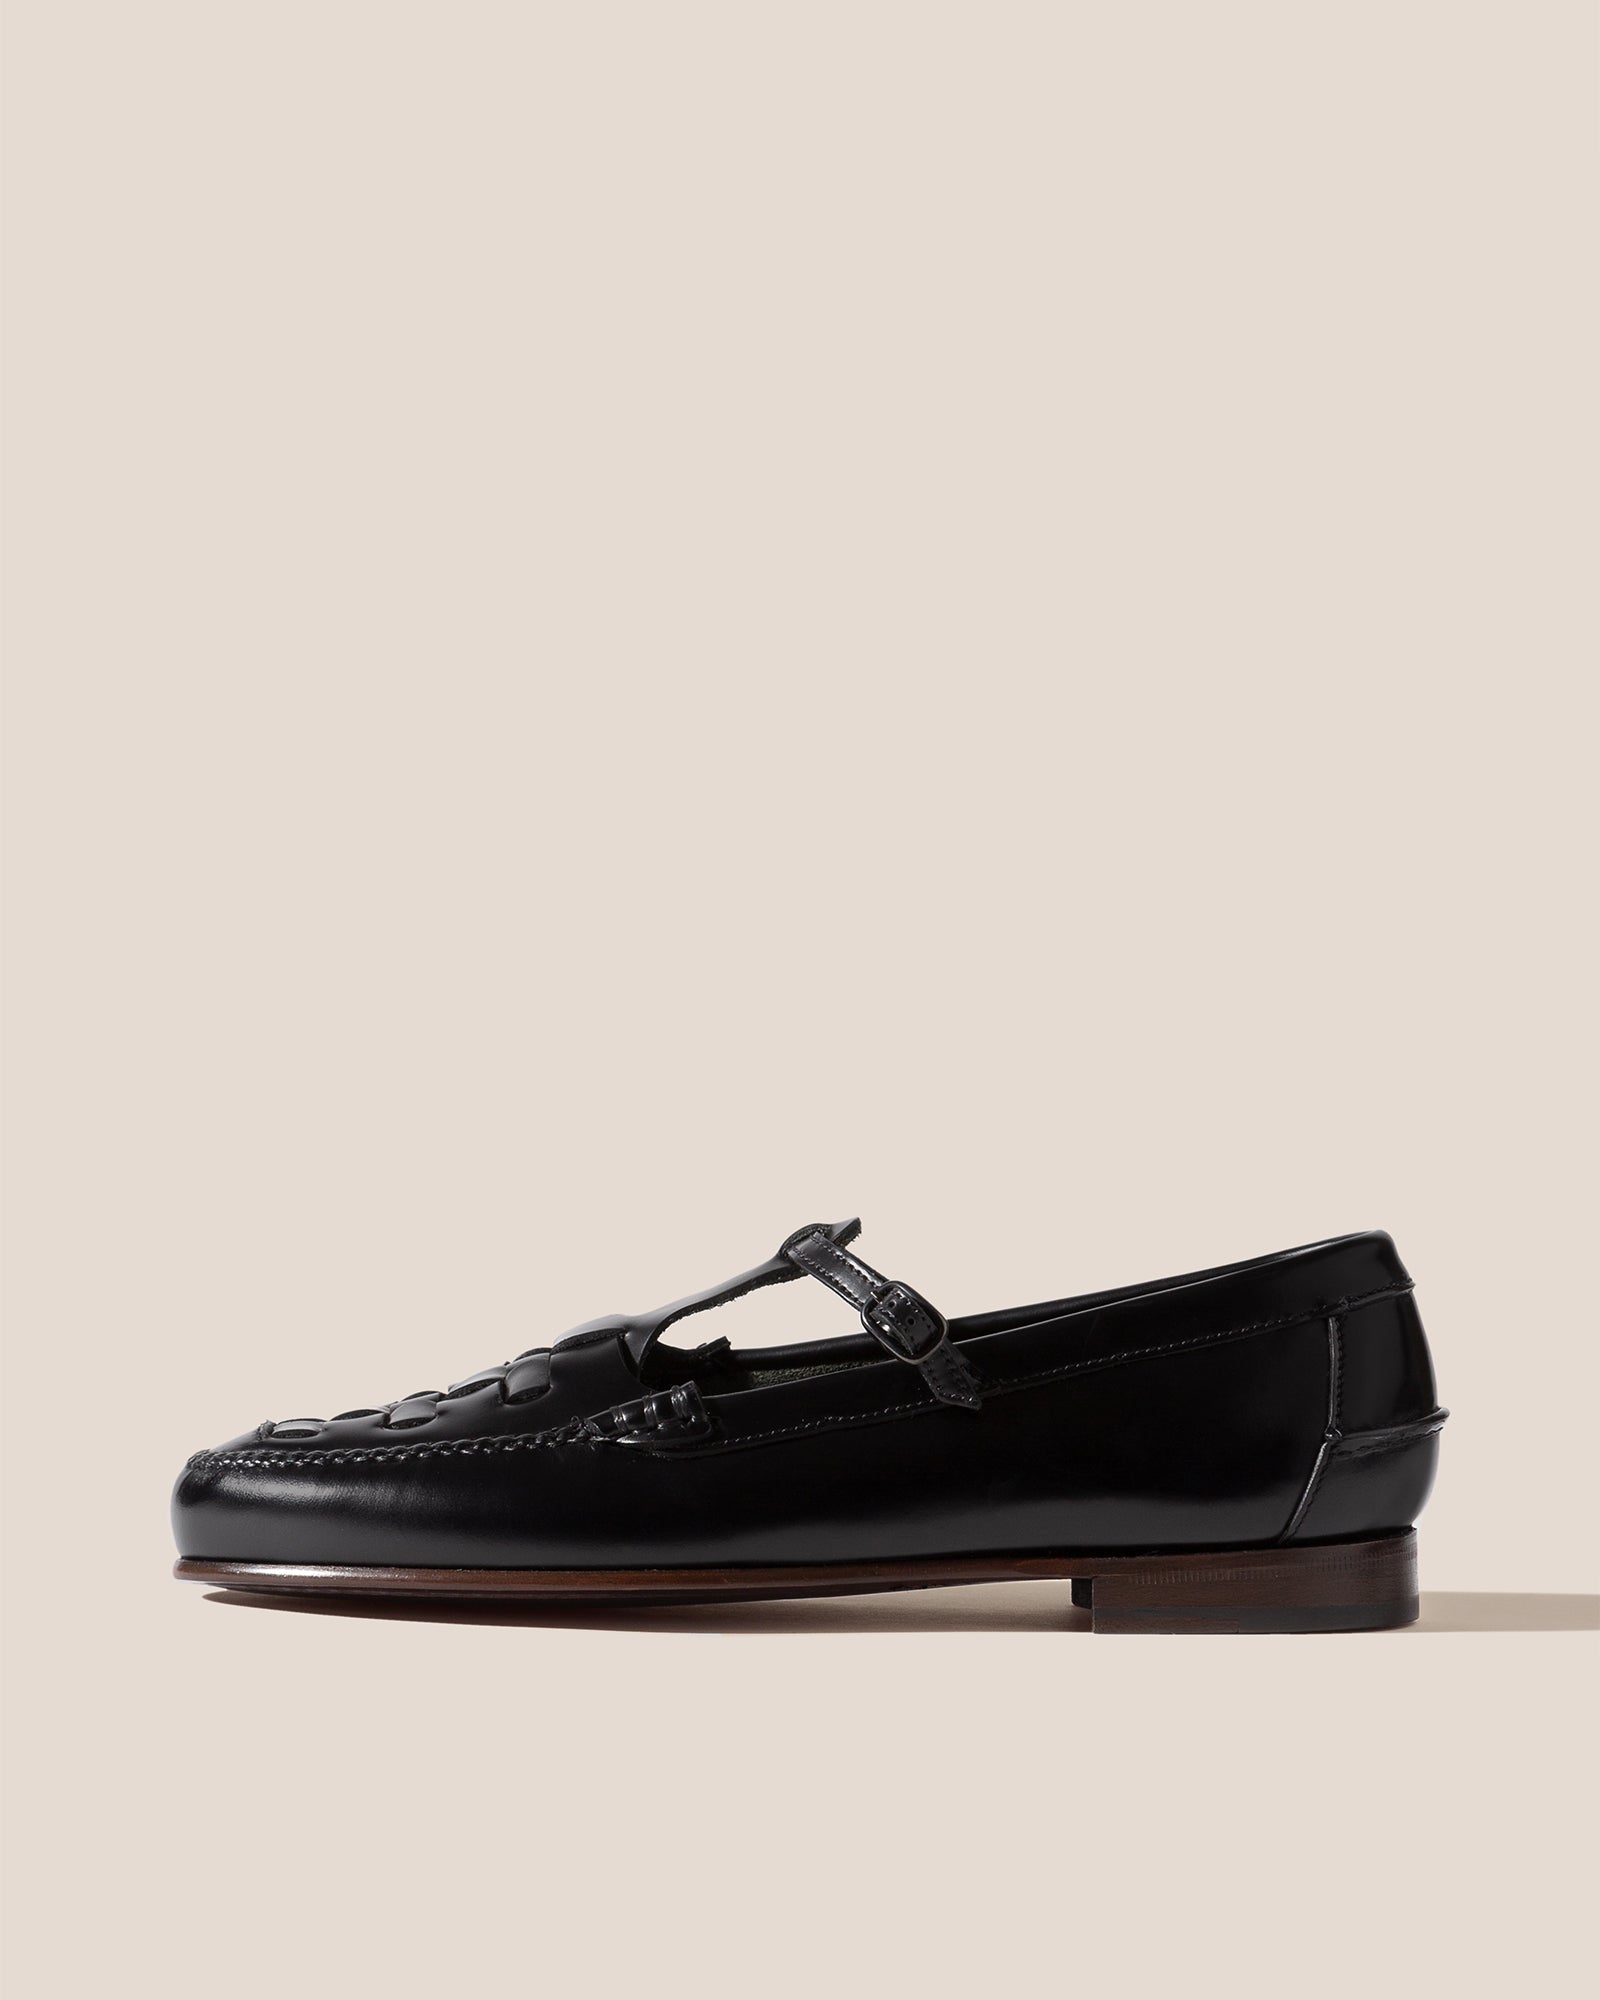 All Black Side Cord Flatform Loafer at Von Maur